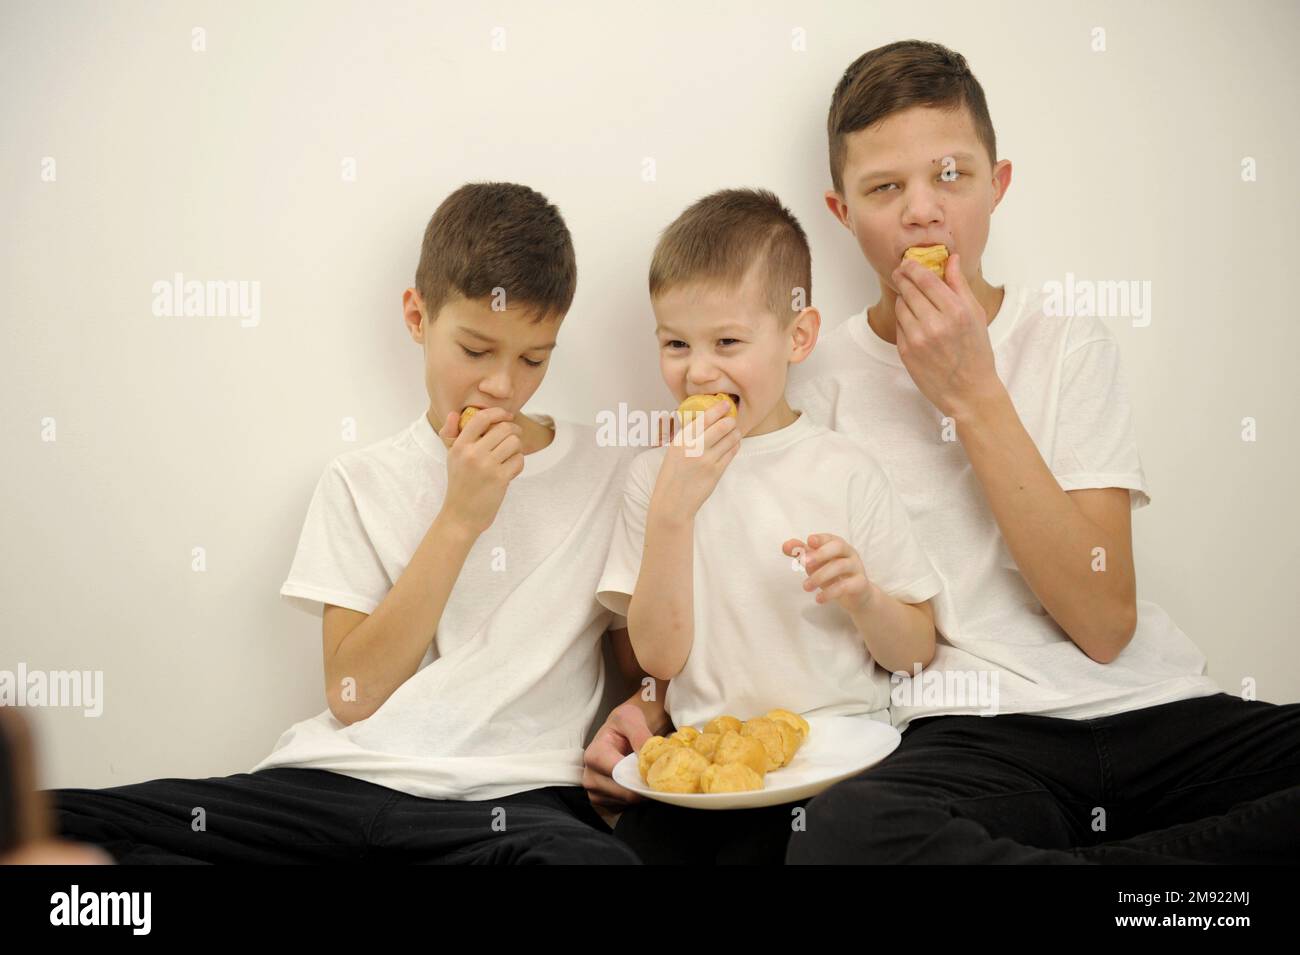 Glückliche, fröhliche Familie, die zusammen Muschis aß, öffneten ihren Mund und beißen köstliche Dessertkinder drei Söhne in weißen T-Shirts drei Kinder Stockfoto